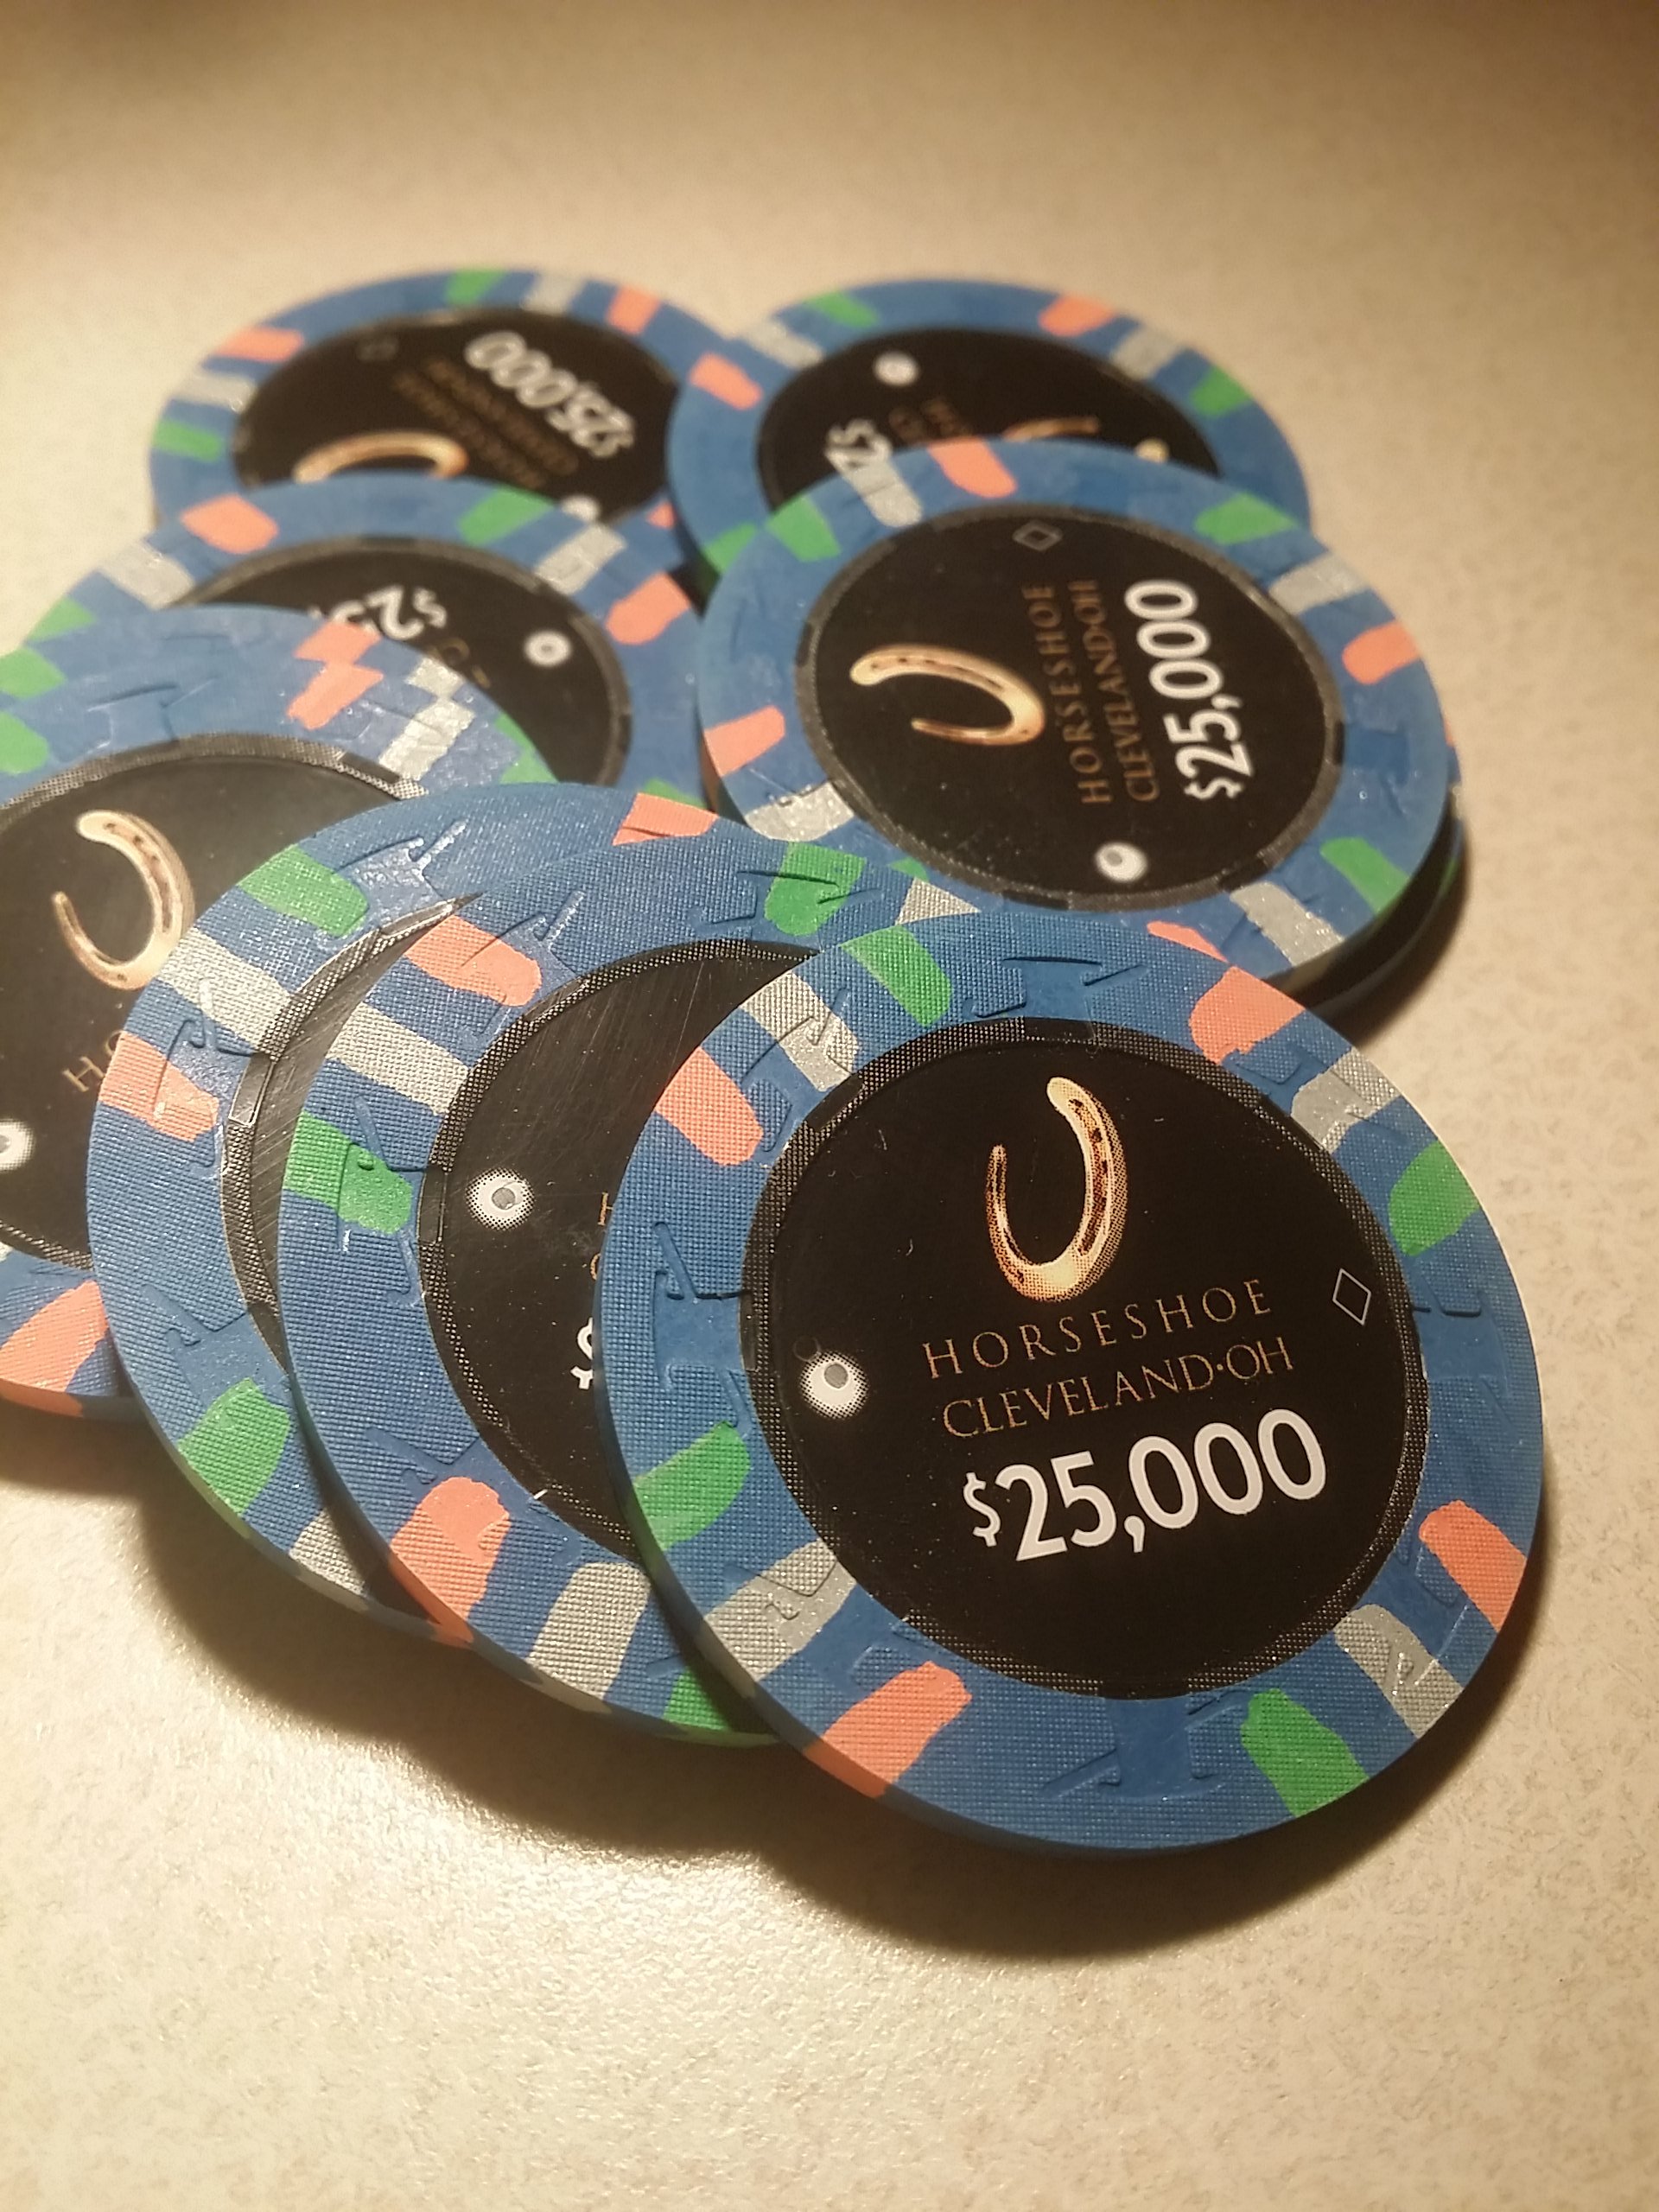 Horseshoe Casino Cleveland Chips - $25,000s